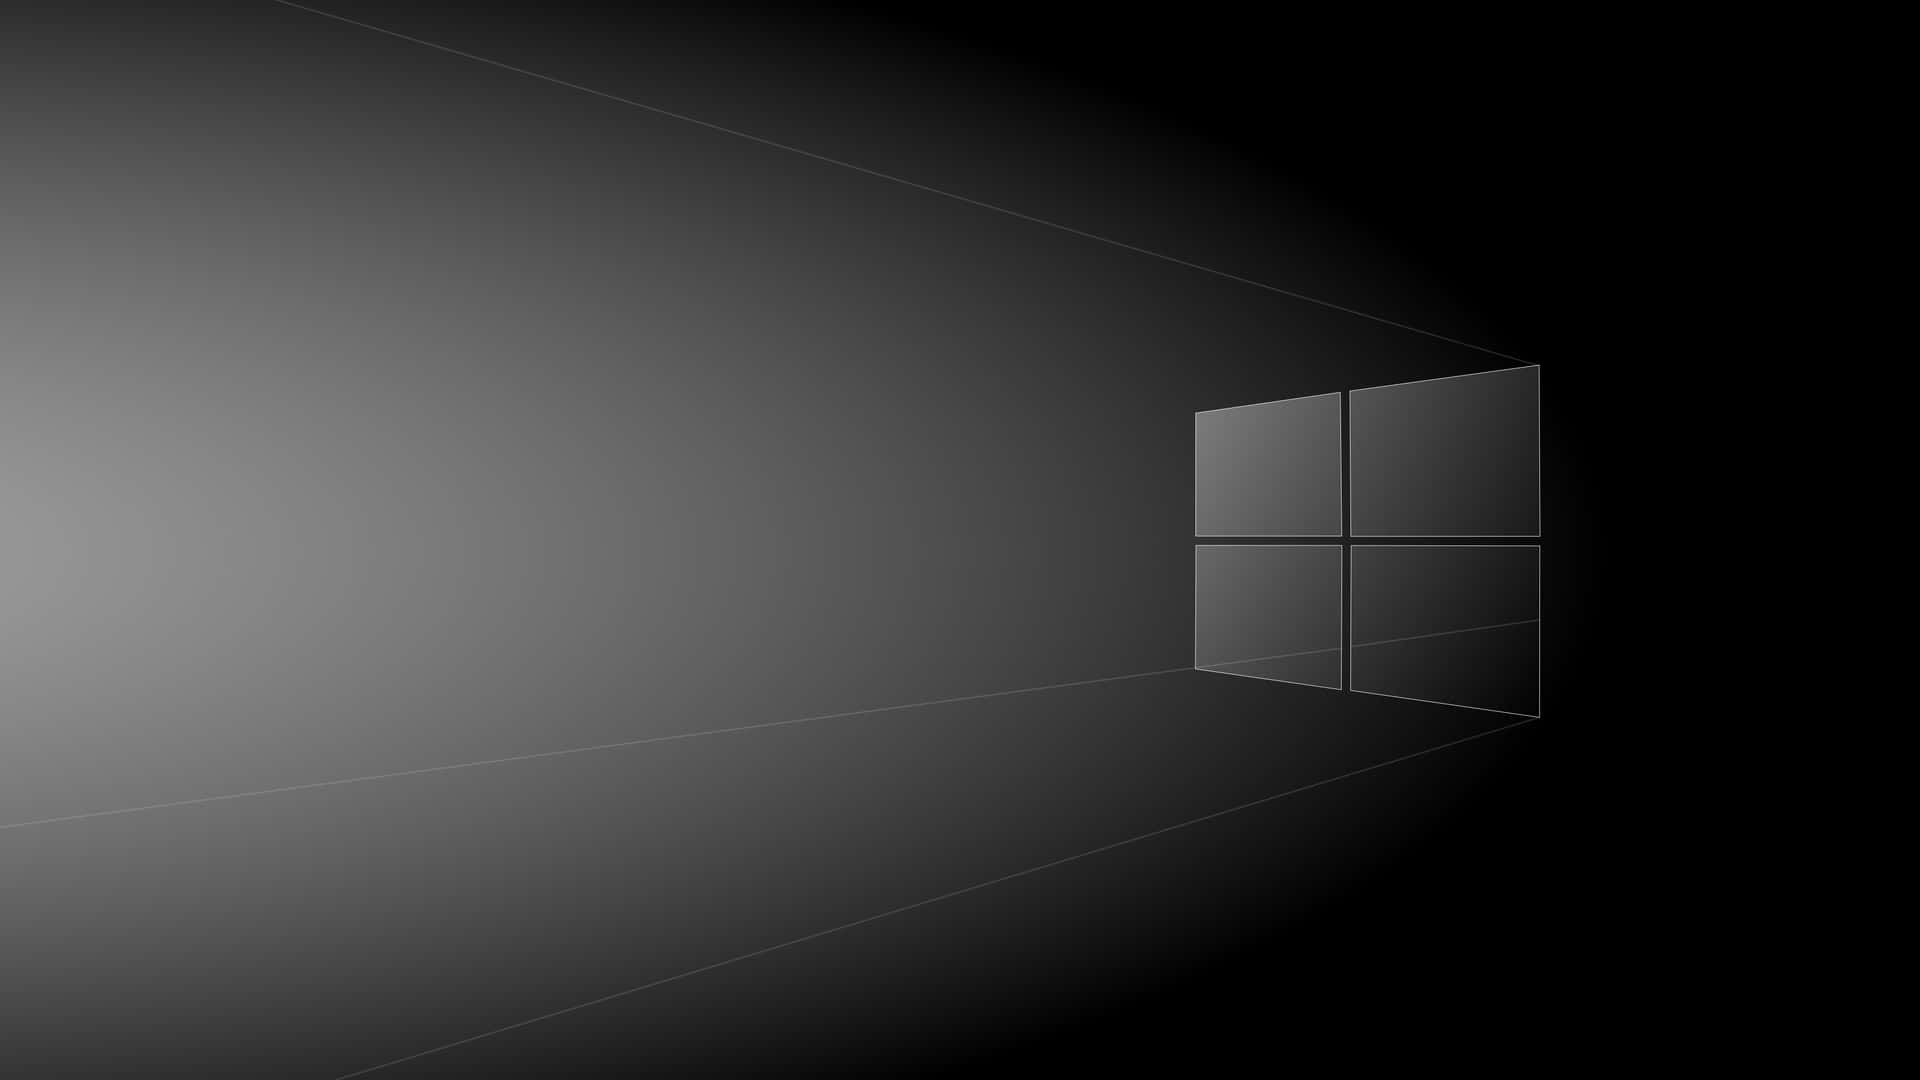 Windows Default Background